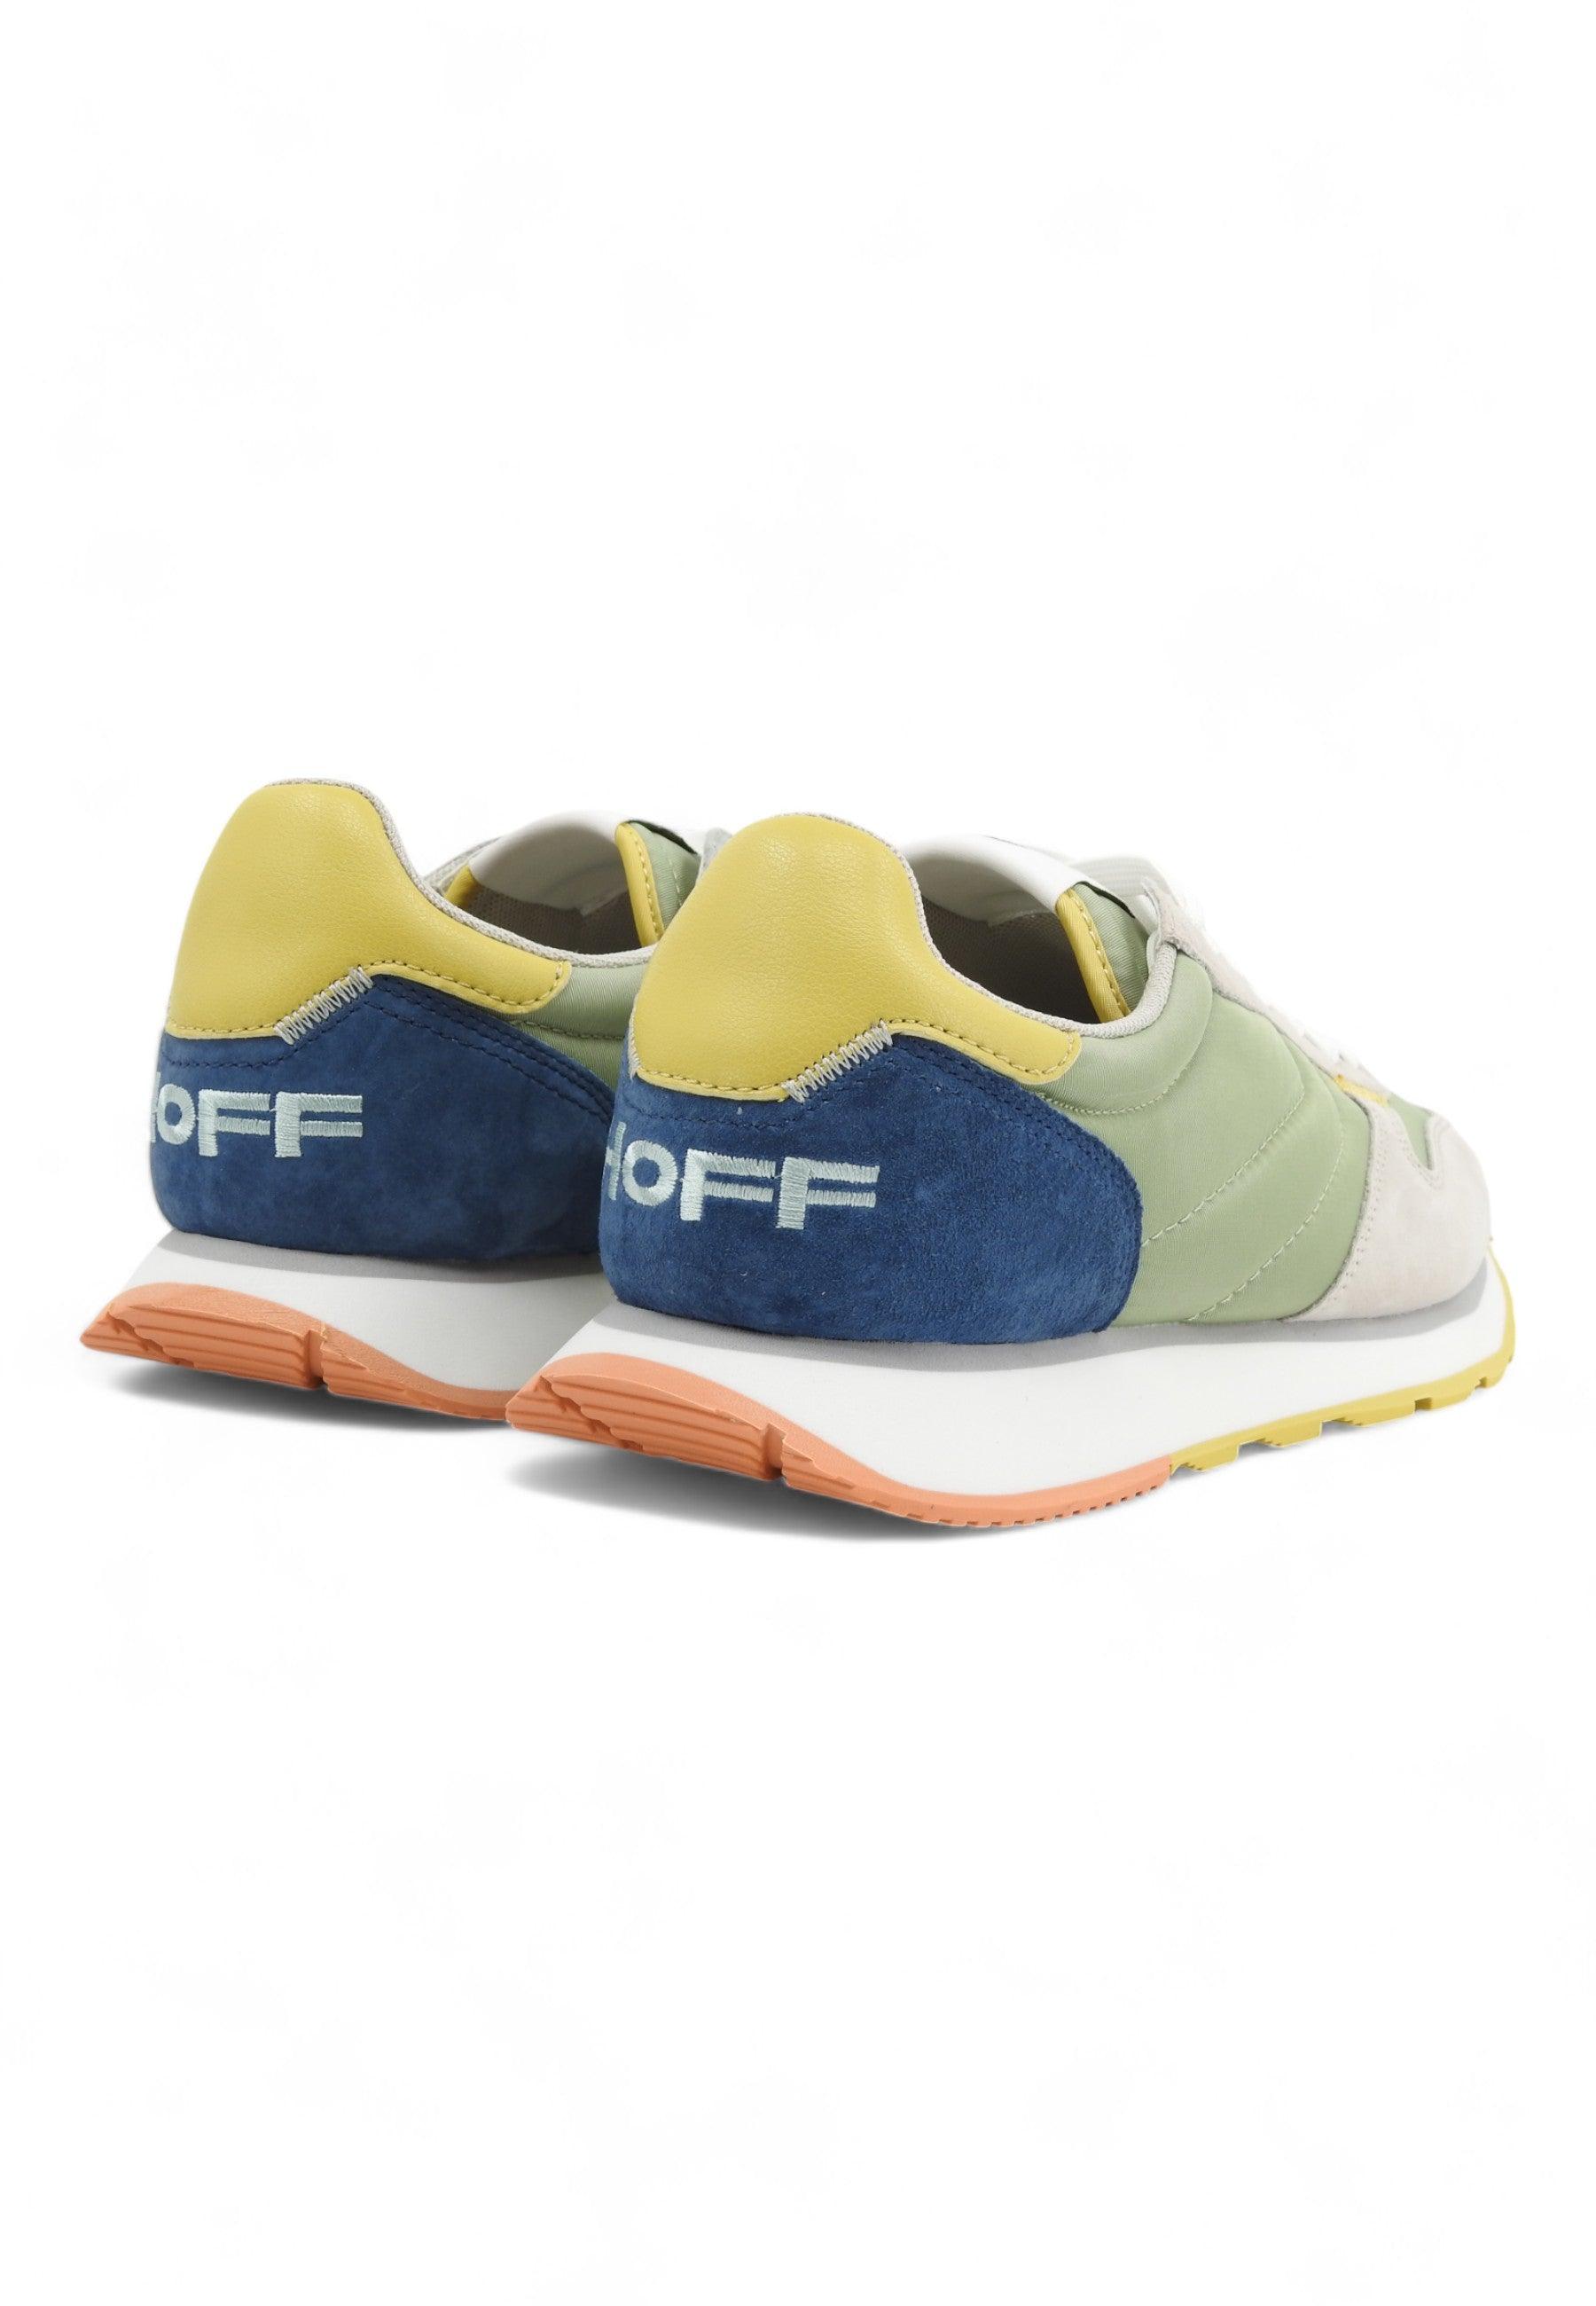 HOFF Marathon Sneaker Uomo Green Beige Multi 12417601 - Sandrini Calzature e Abbigliamento